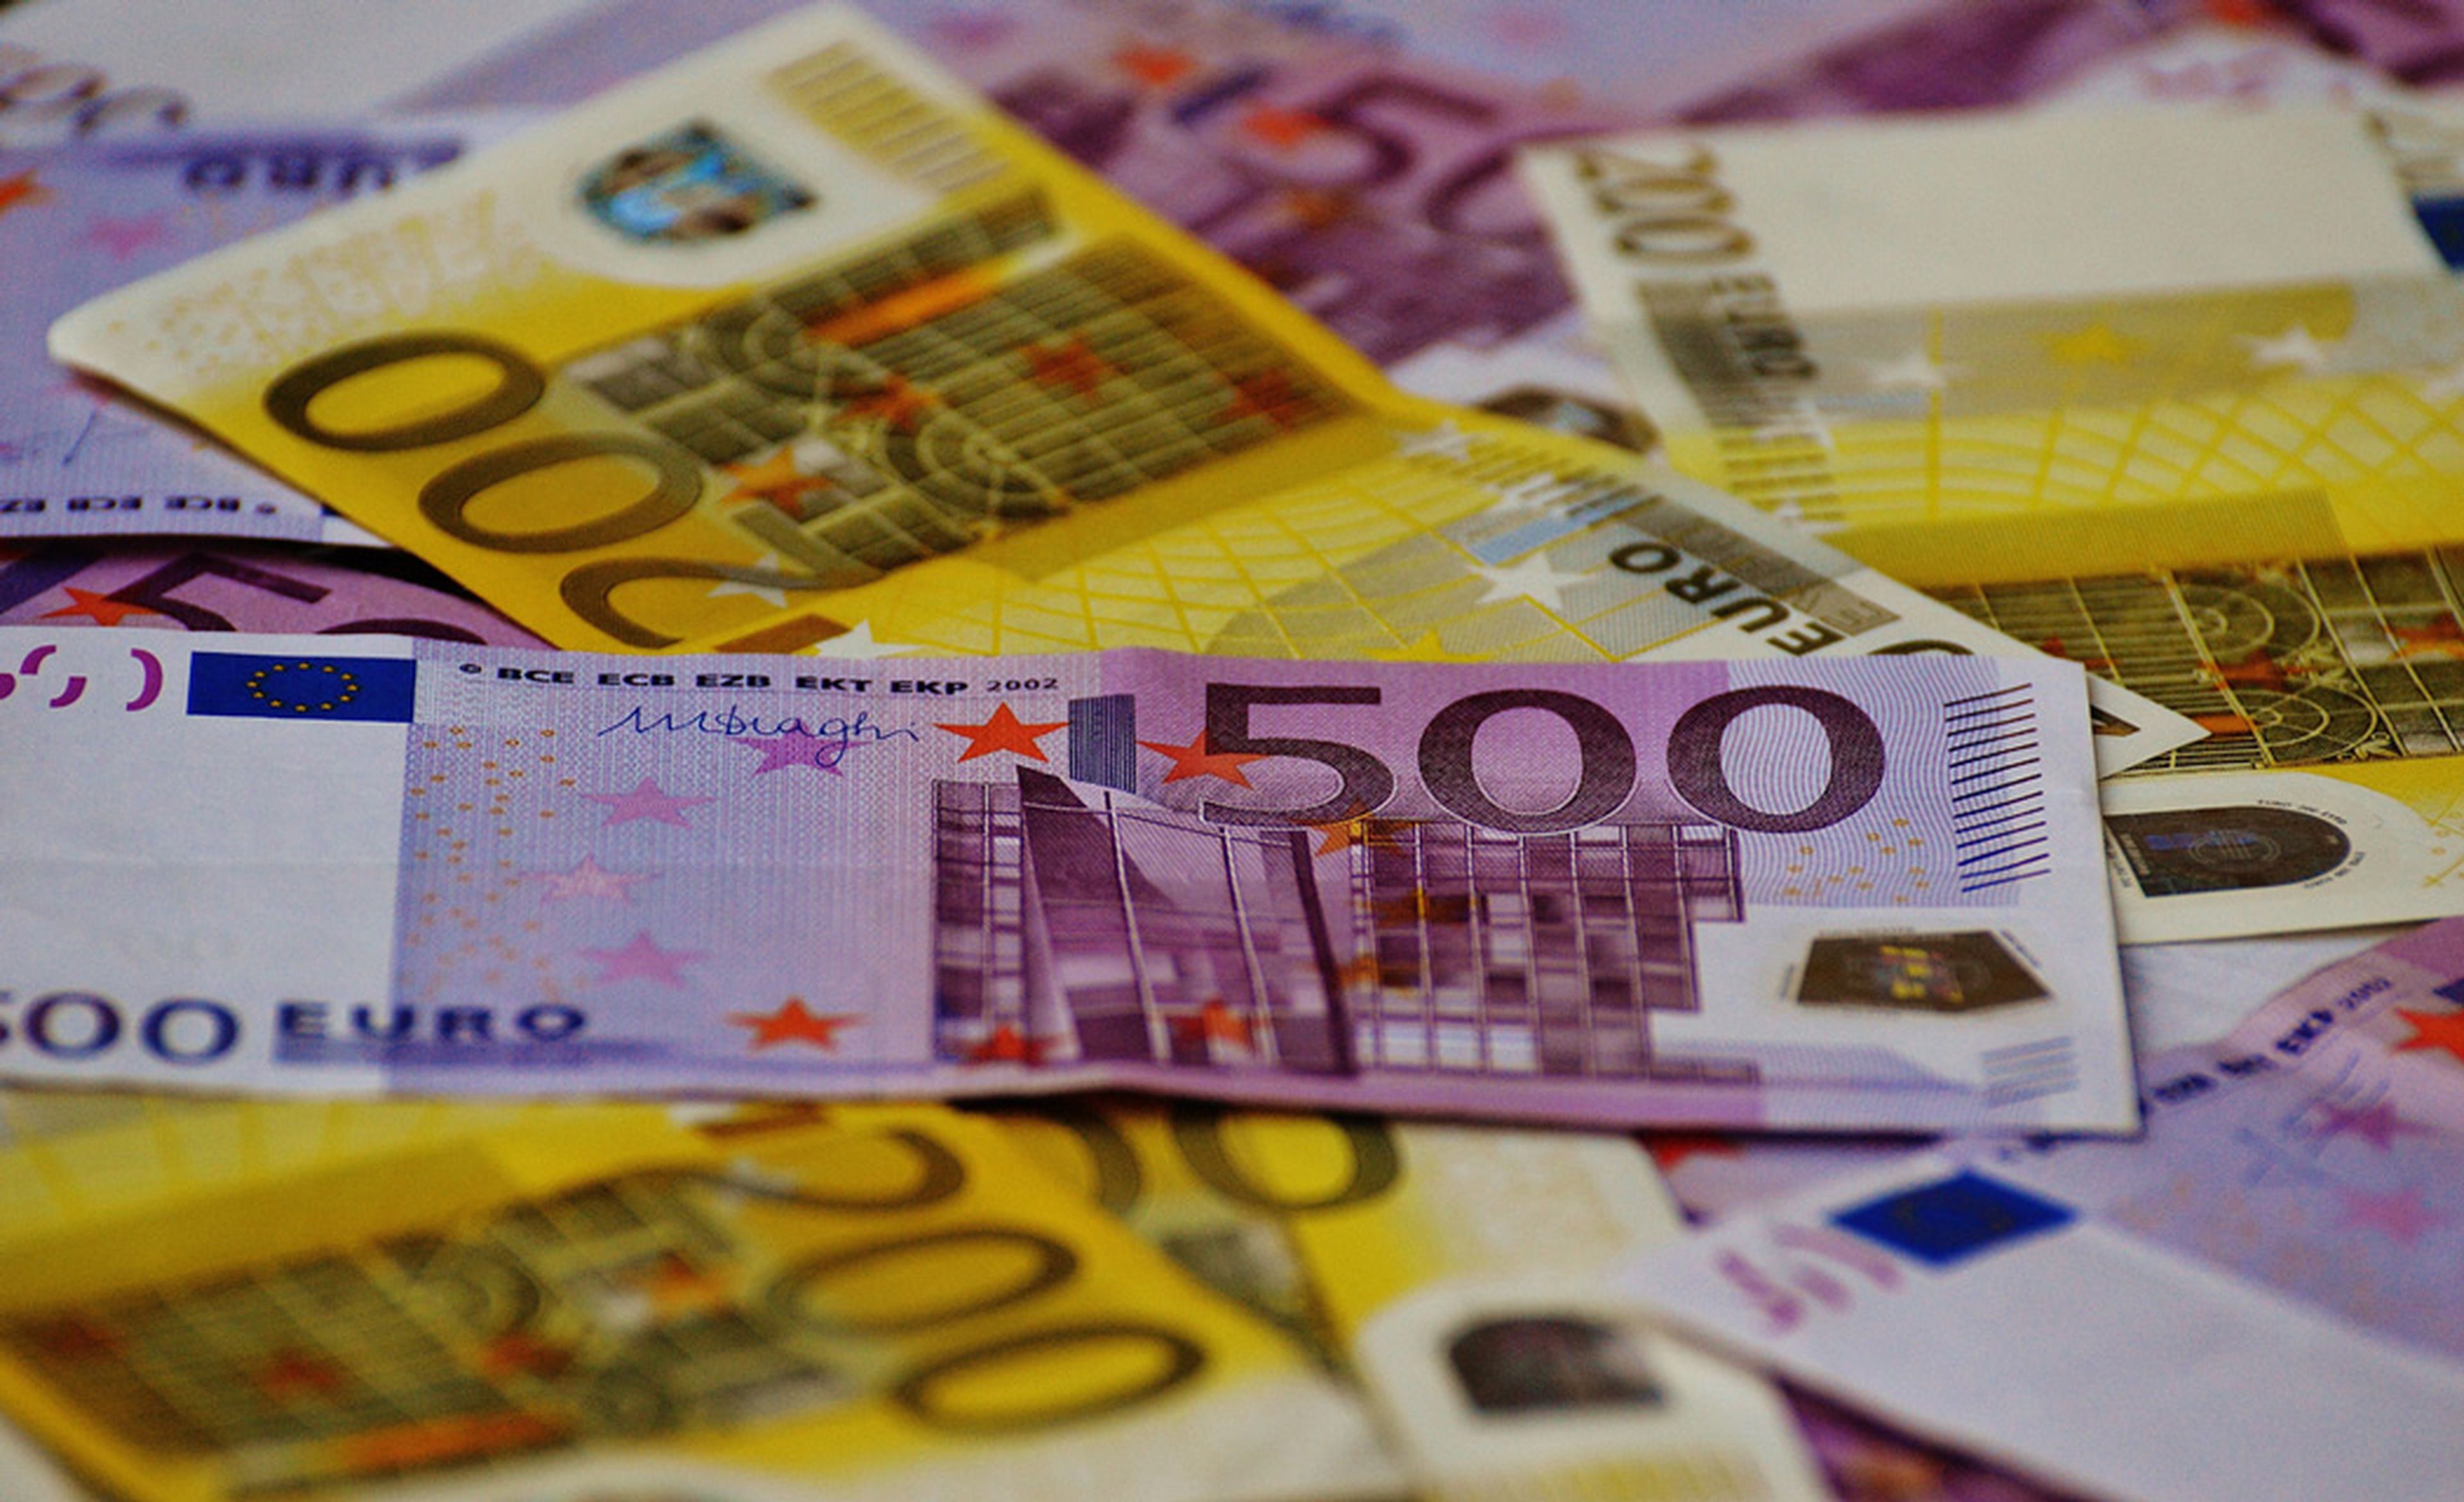 Billetes Euro